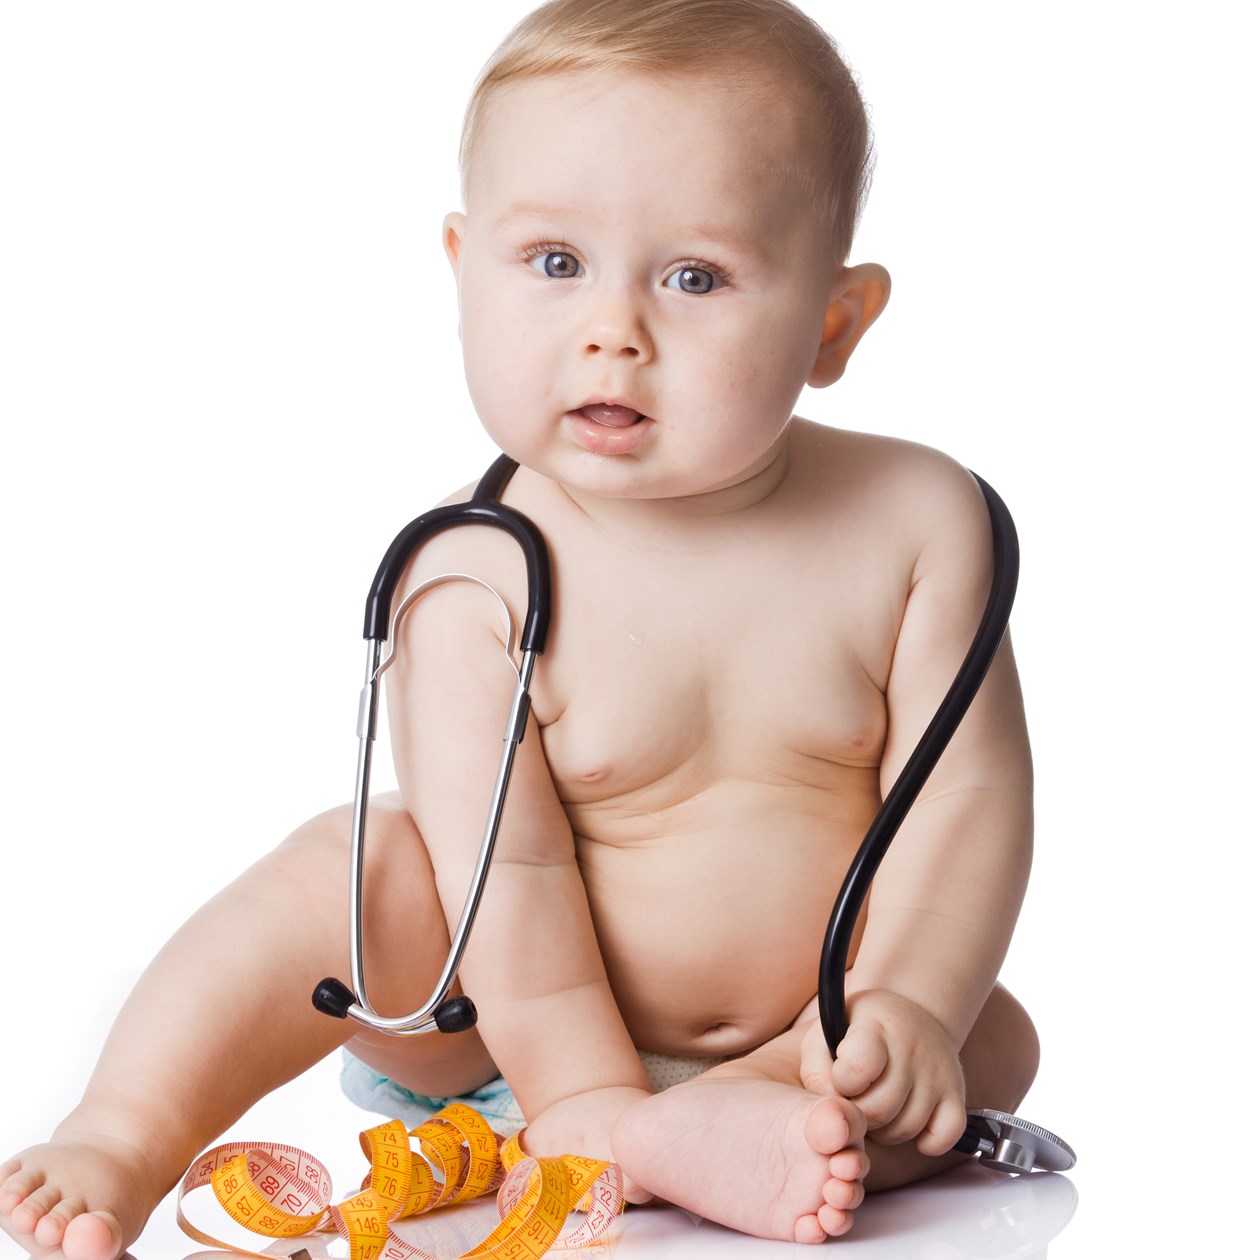 Baby med målebånd og stetoskob